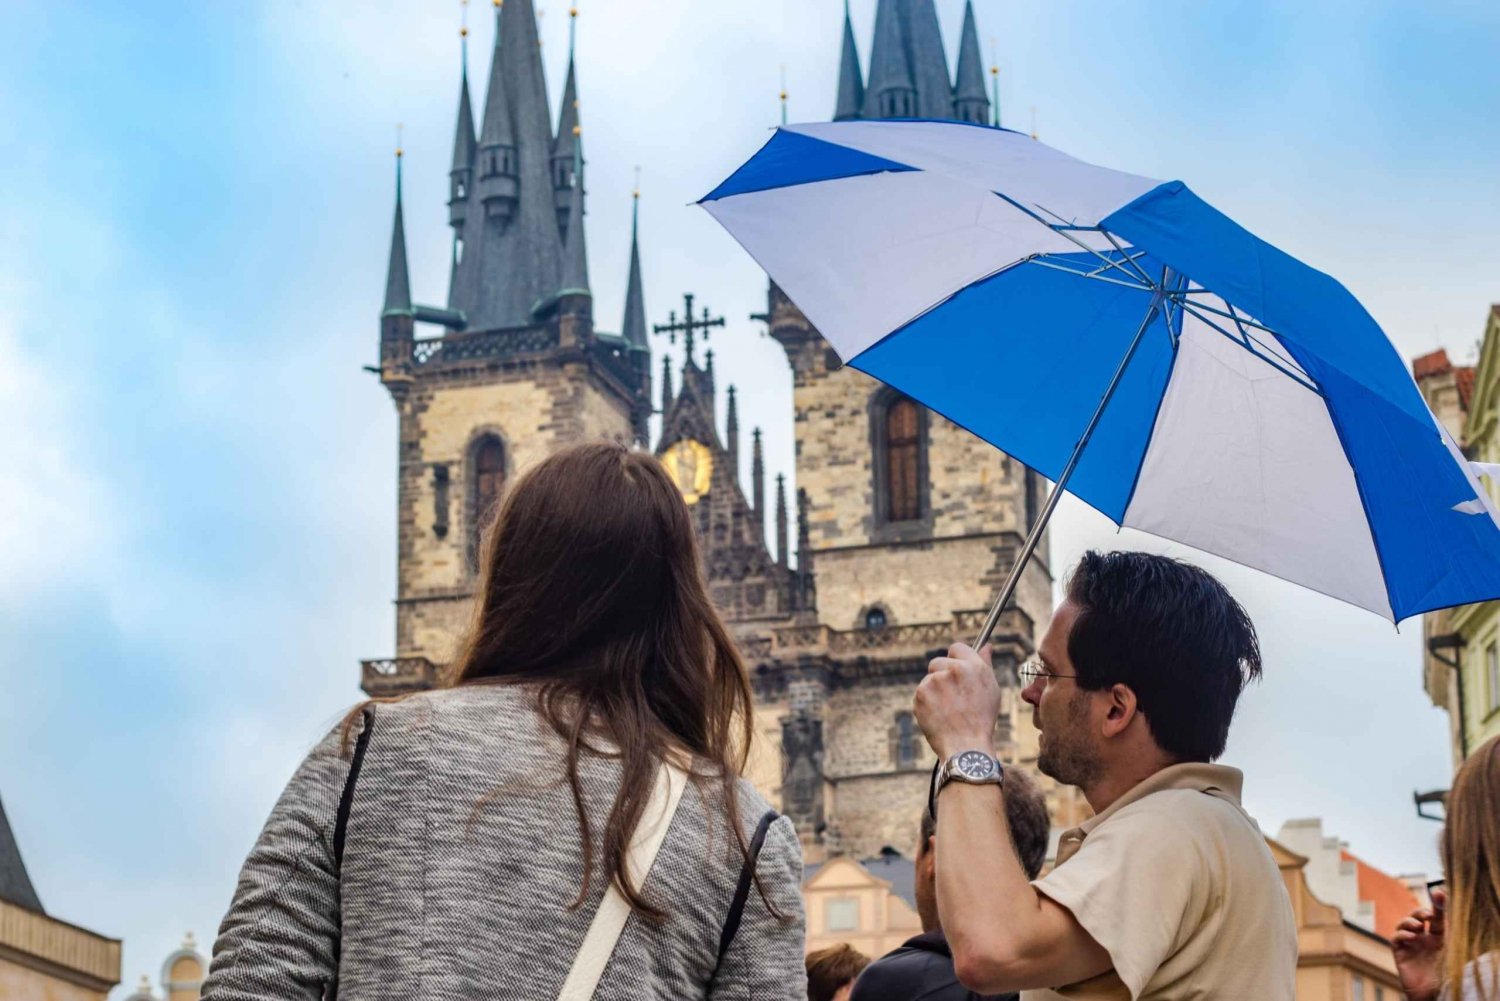 Praha: 3-timers byvandring i gamlebyen og Praha slott